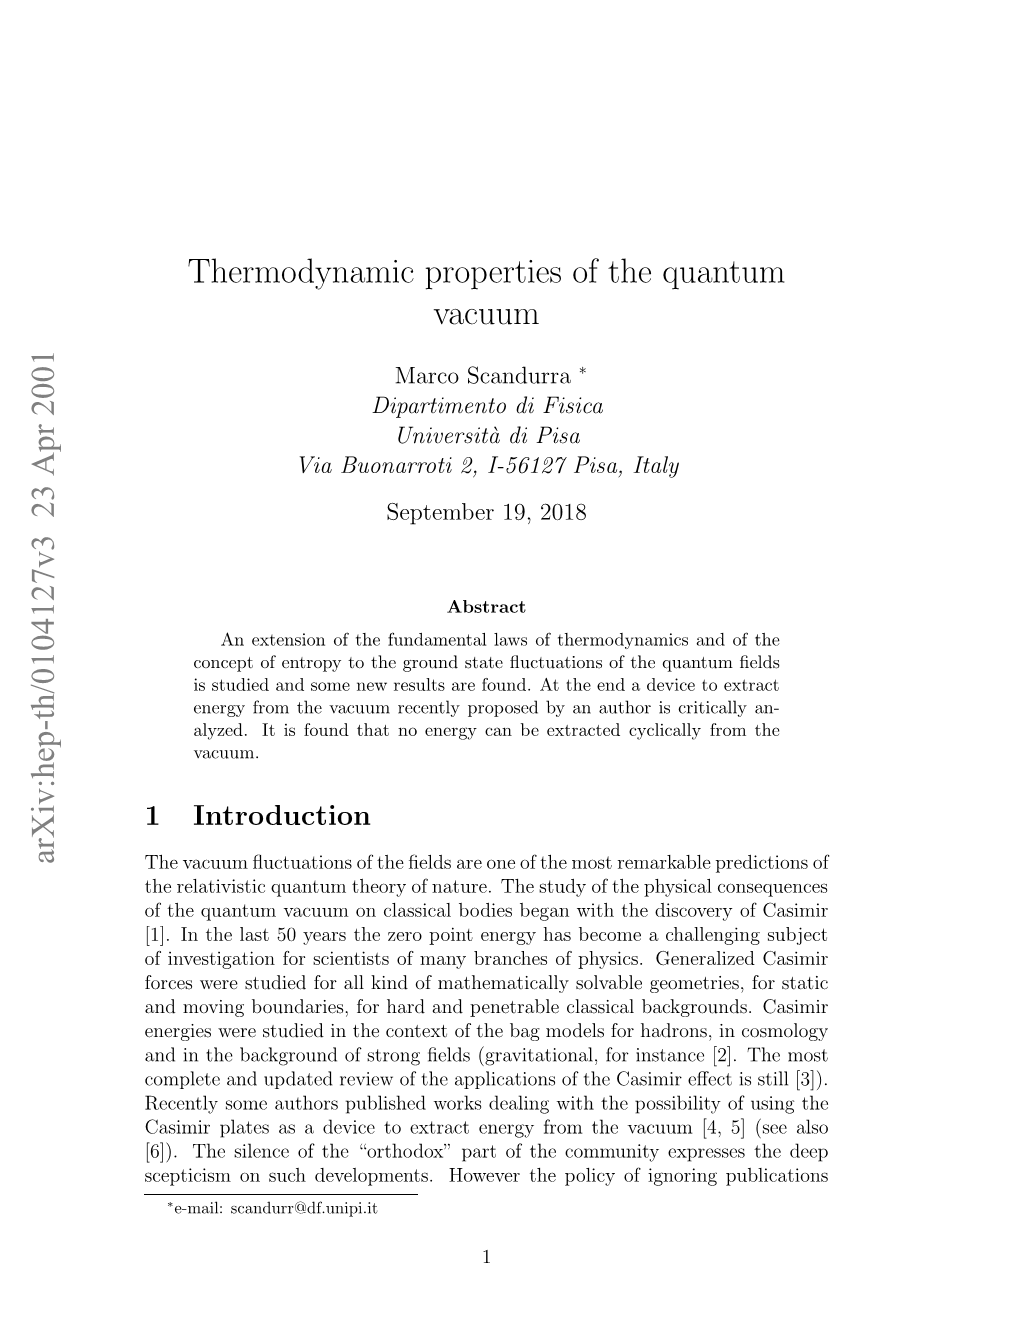 Thermodynamic Properties of the Quantum Vacuum